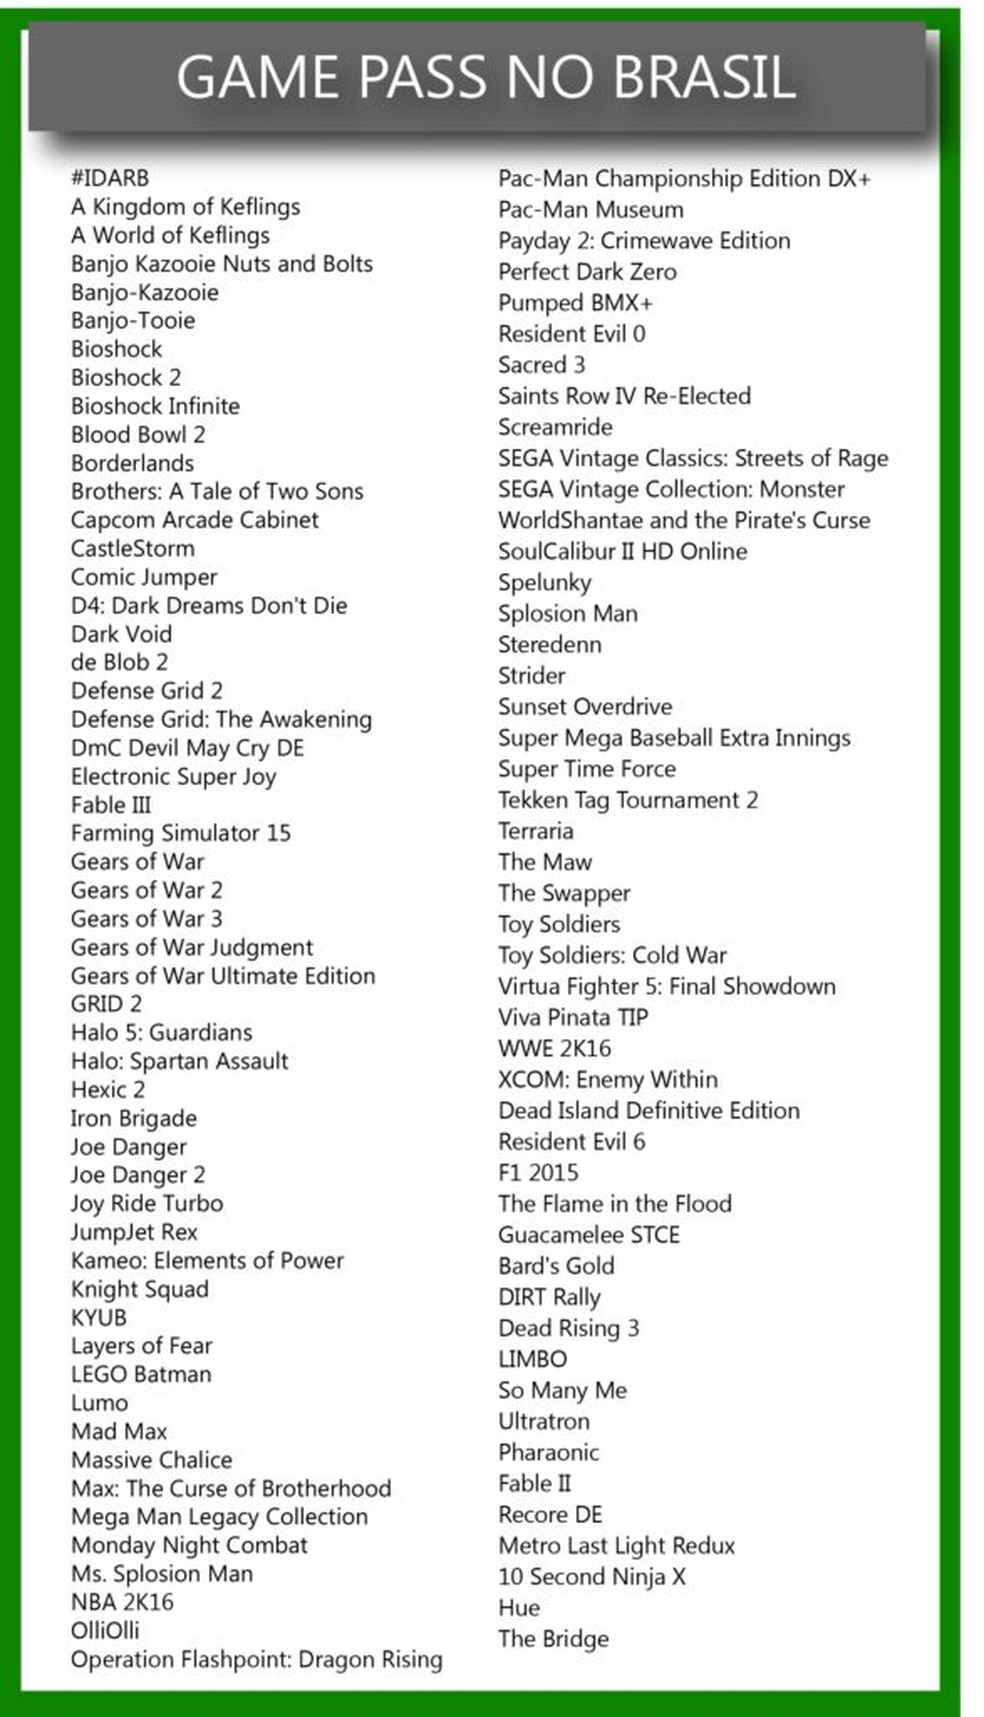 Xbox revela próximas entradas no Xbox Game Pass